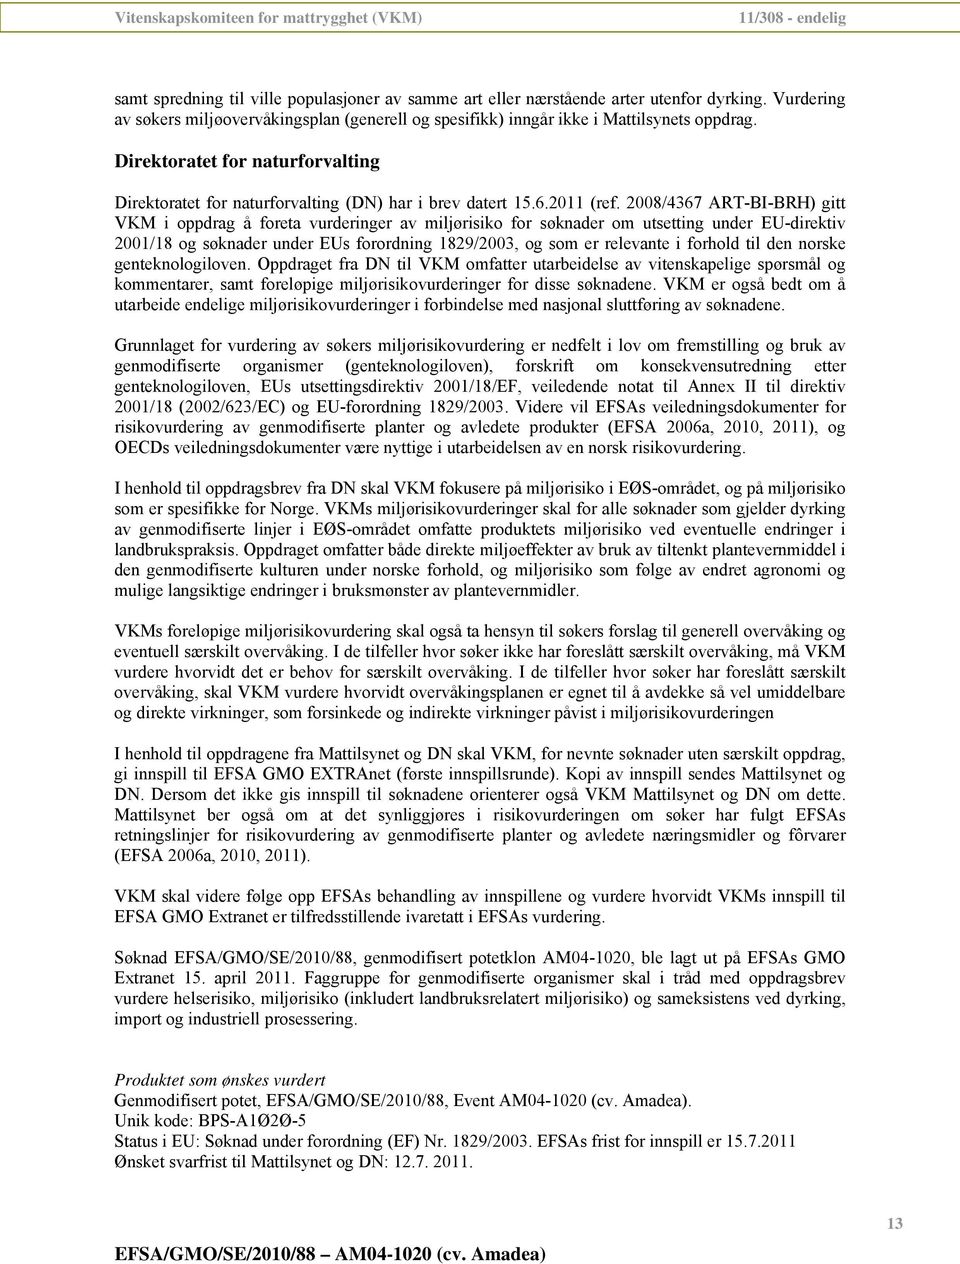 2008/4367 ART-BI-BRH) gitt VKM i oppdrag å foreta vurderinger av miljørisiko for søknader om utsetting under EU-direktiv 200/8 og søknader under EUs forordning 829/2003, og som er relevante i forhold